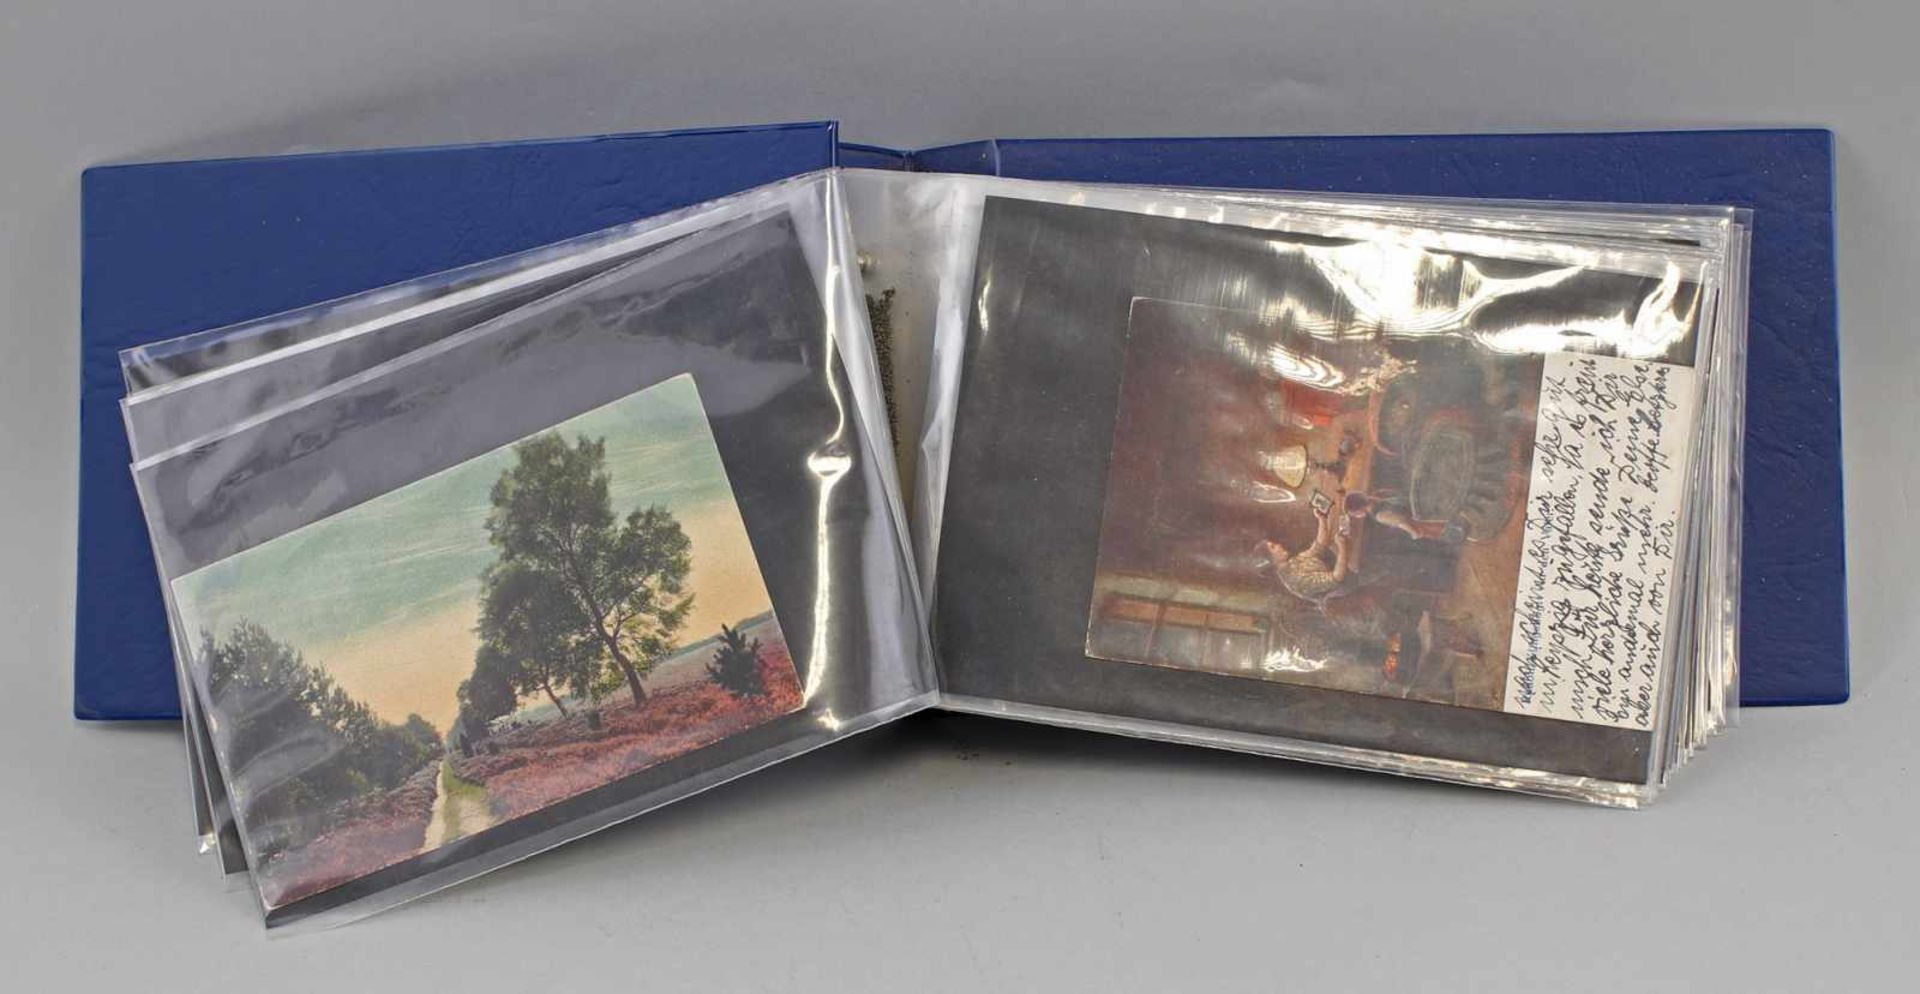 Album Gemälde- und Künstlerkartenca. 66 Stück, Gemälde- und Künstlerkarten, um 1920, teilweise